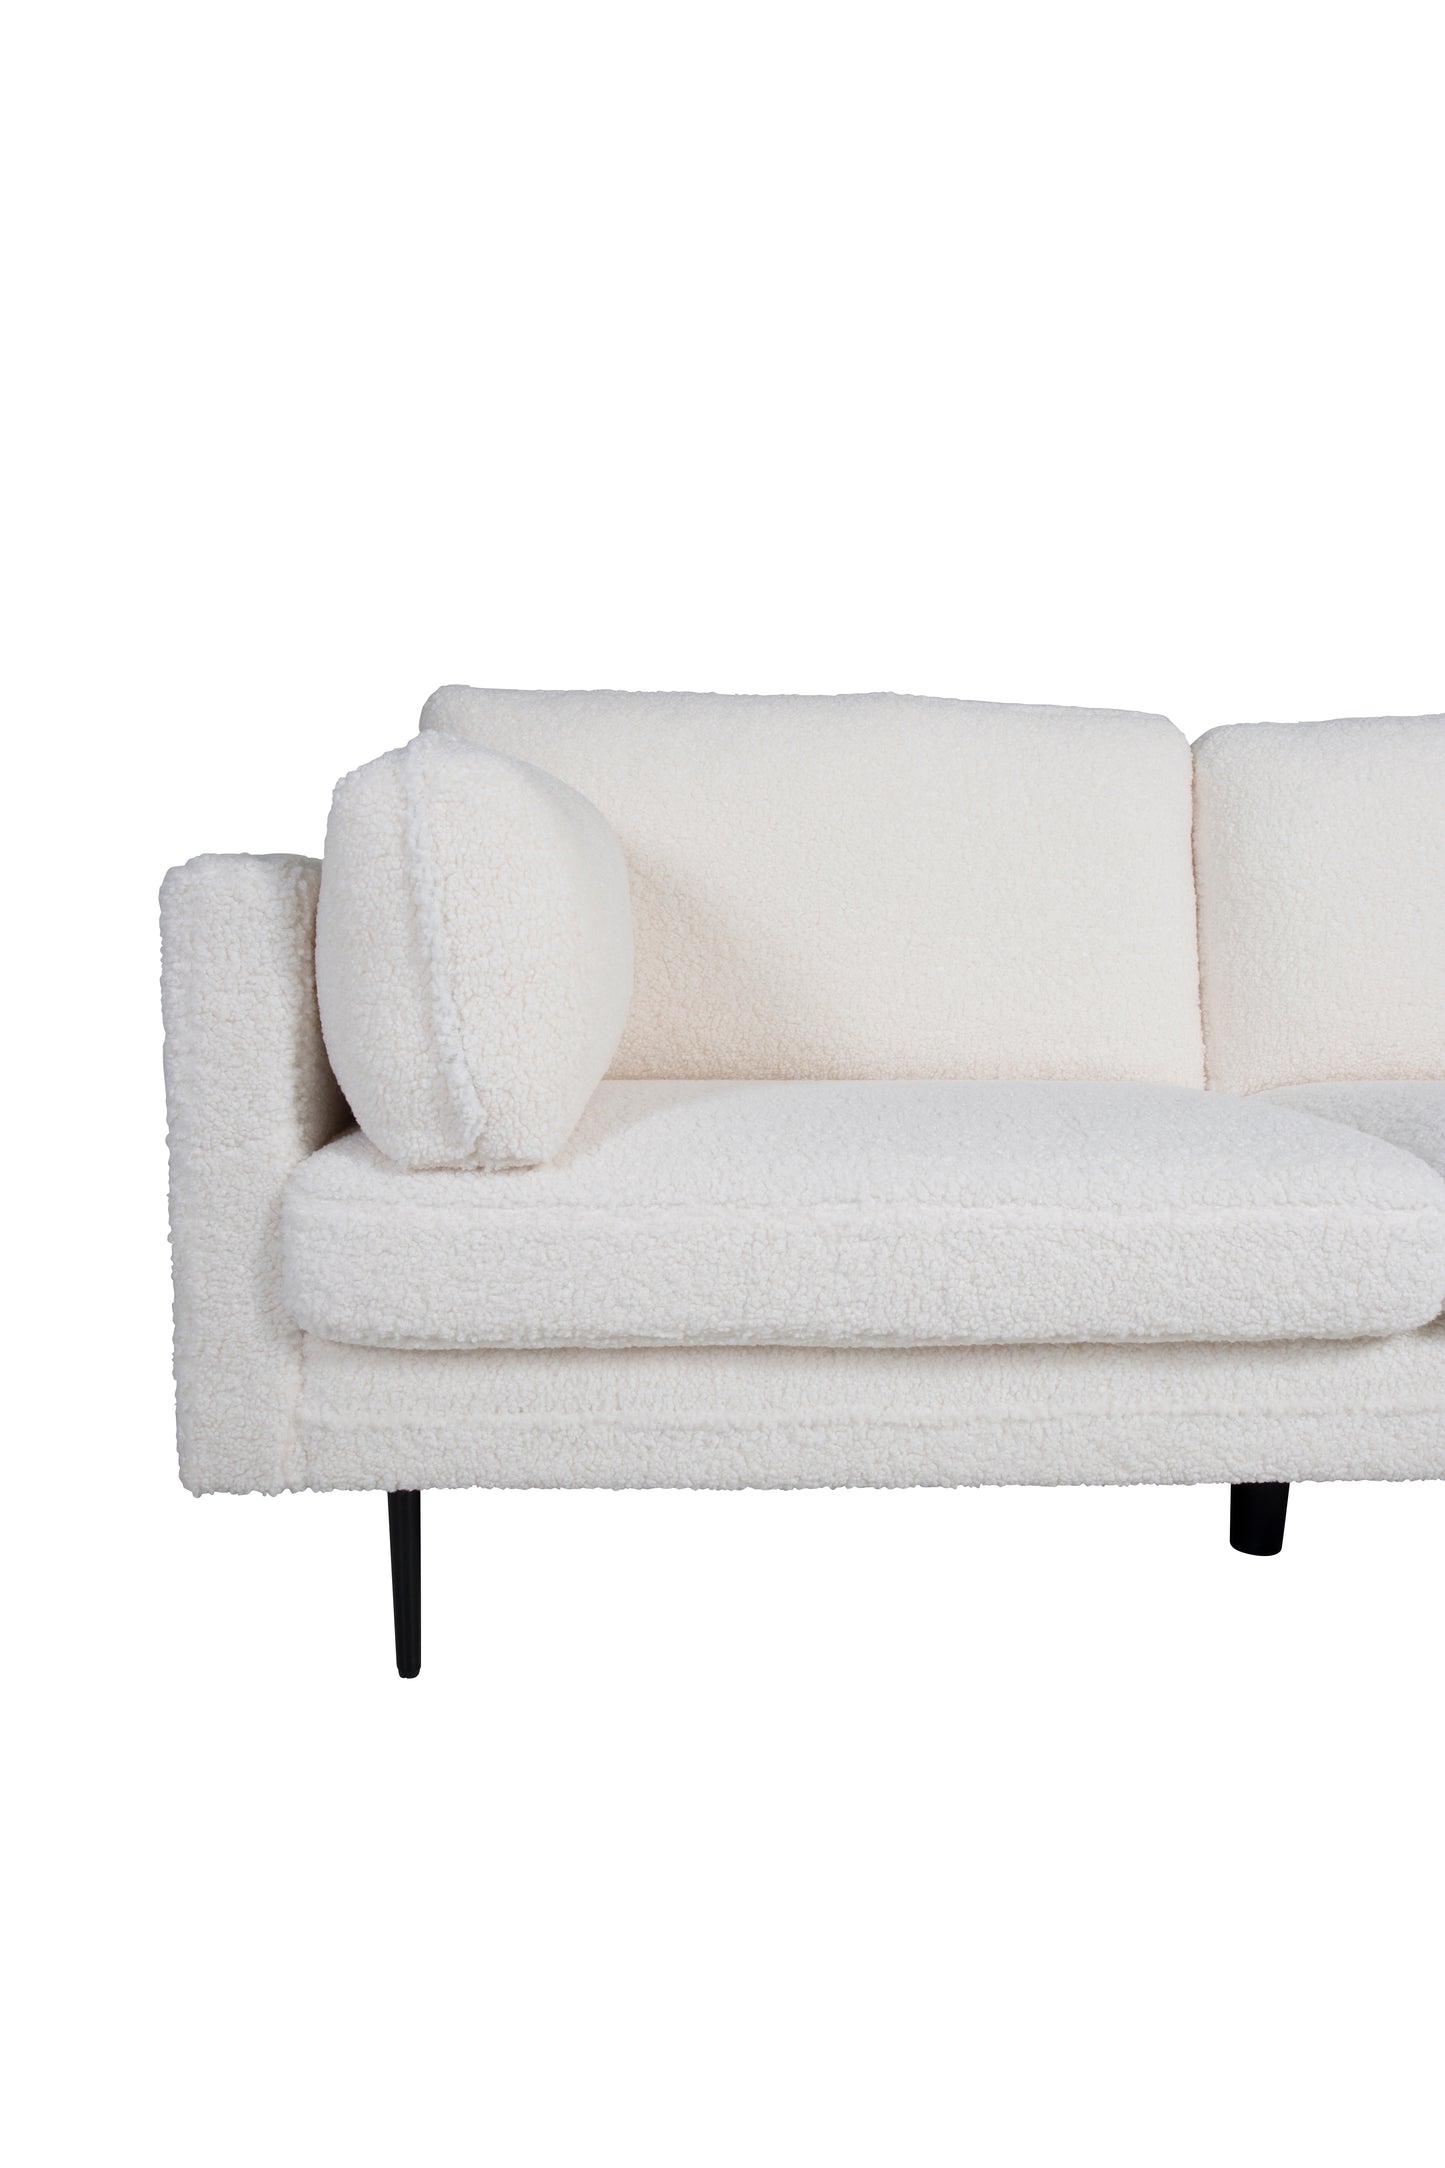 Venture-Design | Boom 3-Personen-Sofa - Teddy-Stoff Weiß